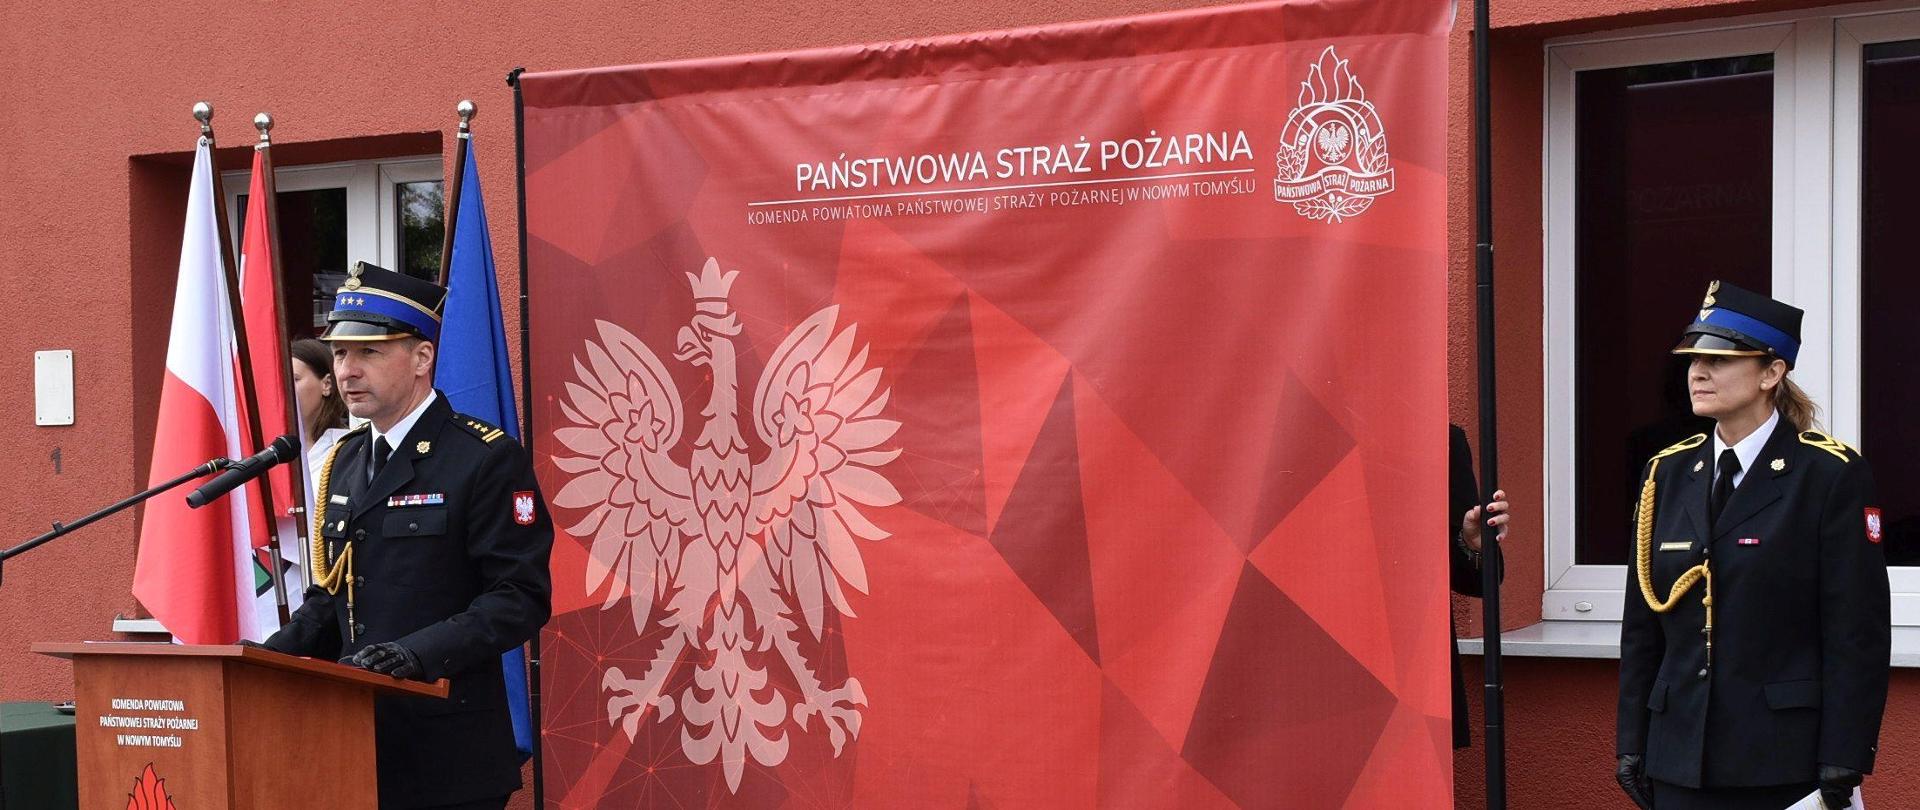 przemówienie Zastępcy Wielkopolskiego Komendanta Wojewódzkiego Państwowej Straży Pożarnej, w tle duża czerwona ścianka z orłem, obok stoi kobieta strażak